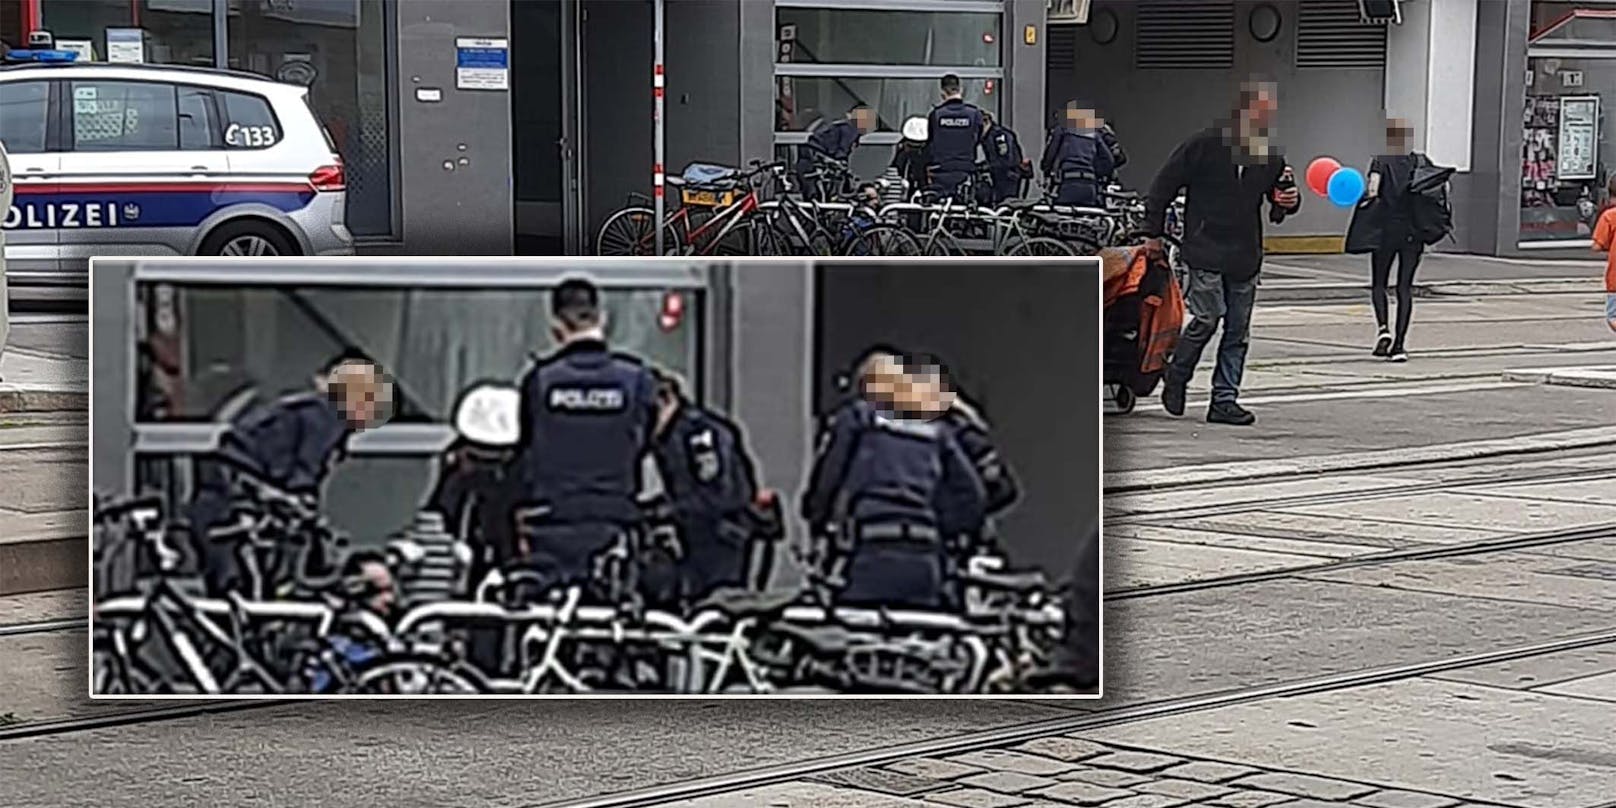 Mann randaliert in Wiener Supermarkt, attackiert Kunden